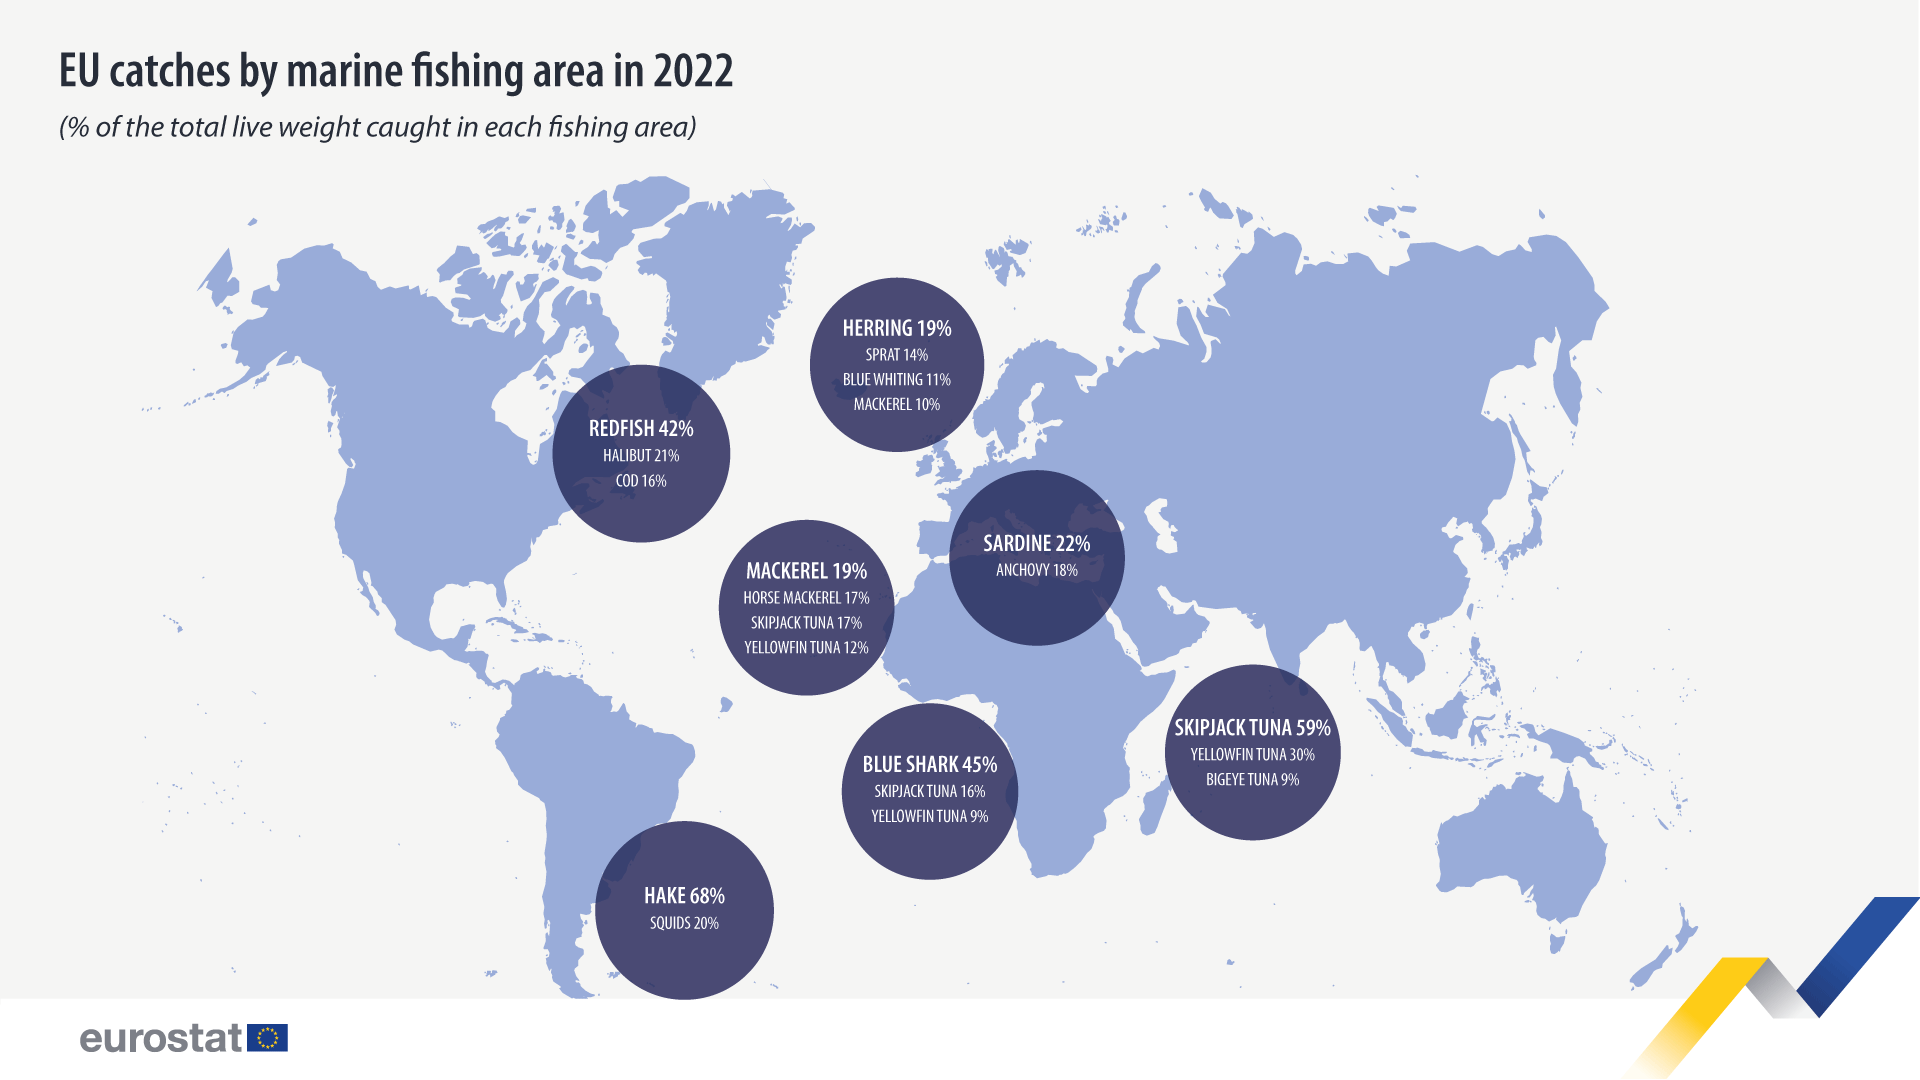 Połowy UE według morskich obszarów połowowych w 2022 r., % całkowitej wagi w relacji pełnej w każdym obszarze